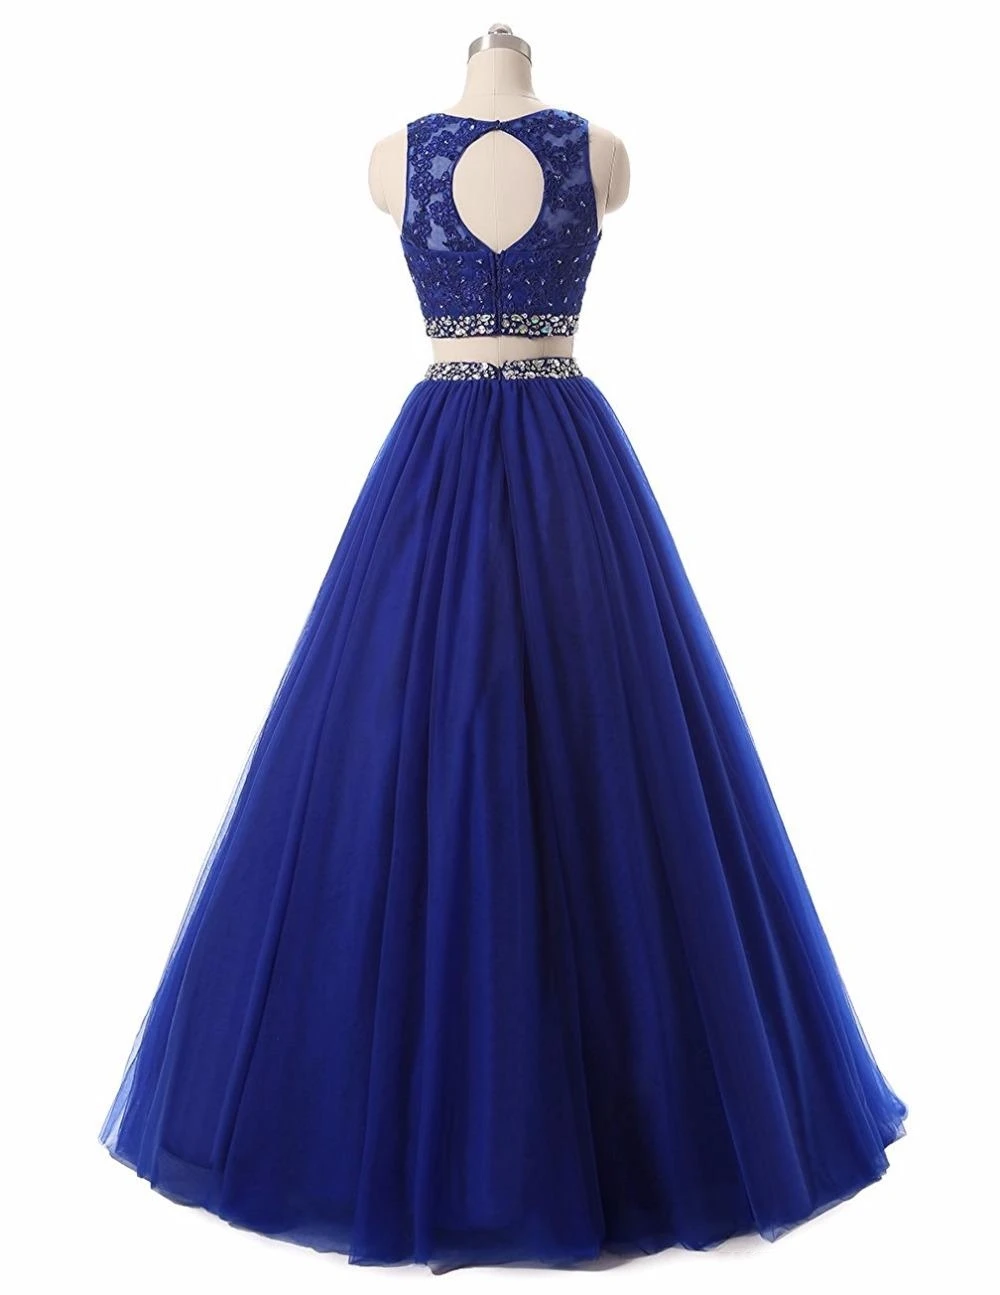 Vestidos כחול רויאל תכשיט לצוואר שני חלקים שמלות לנשף 2019 Appliqus חרוזים ערב רשמי שמלות מפלגה שמלות חלוק דה נשף . ' - ' . 2